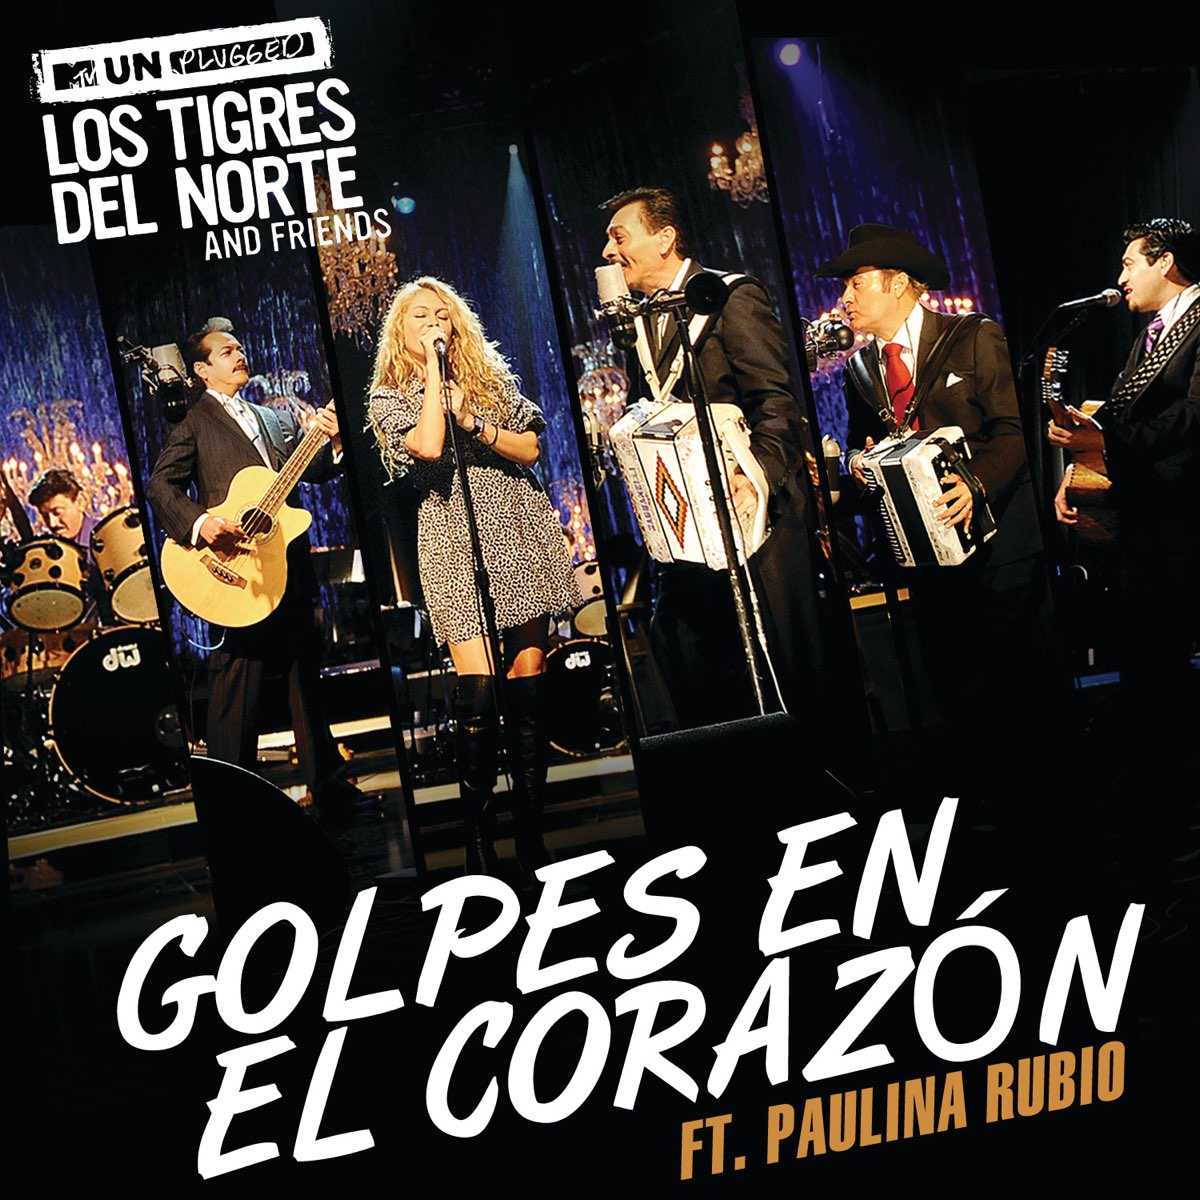 Los Tigres del Norte ft. featuring Paulina Rubio Golpes En El Corazón cover artwork